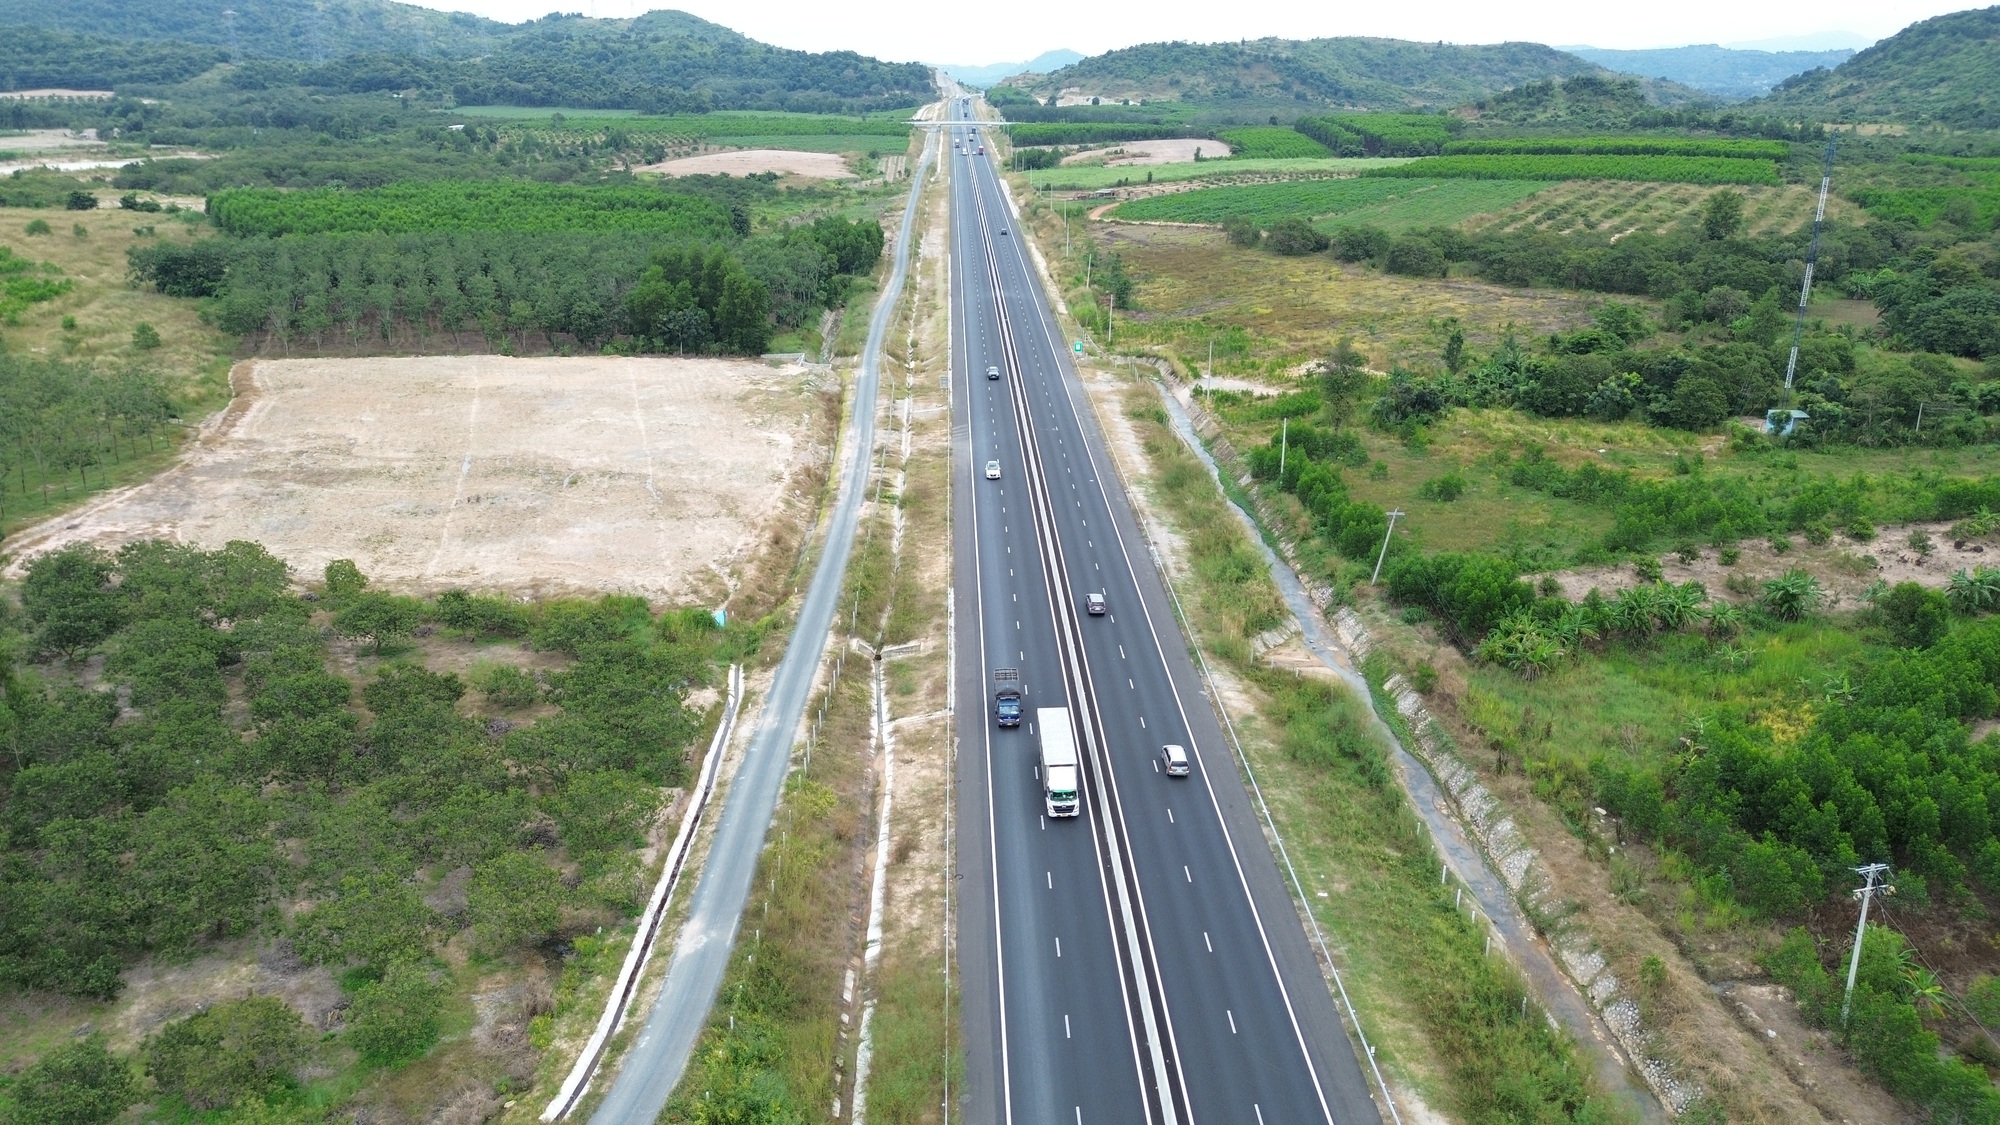 Cao tốc Phan Thiết - Dầu Giây: Nhà thầu gói XL02 hoàn trả hai tuyến đường dân sinh - Ảnh 1.